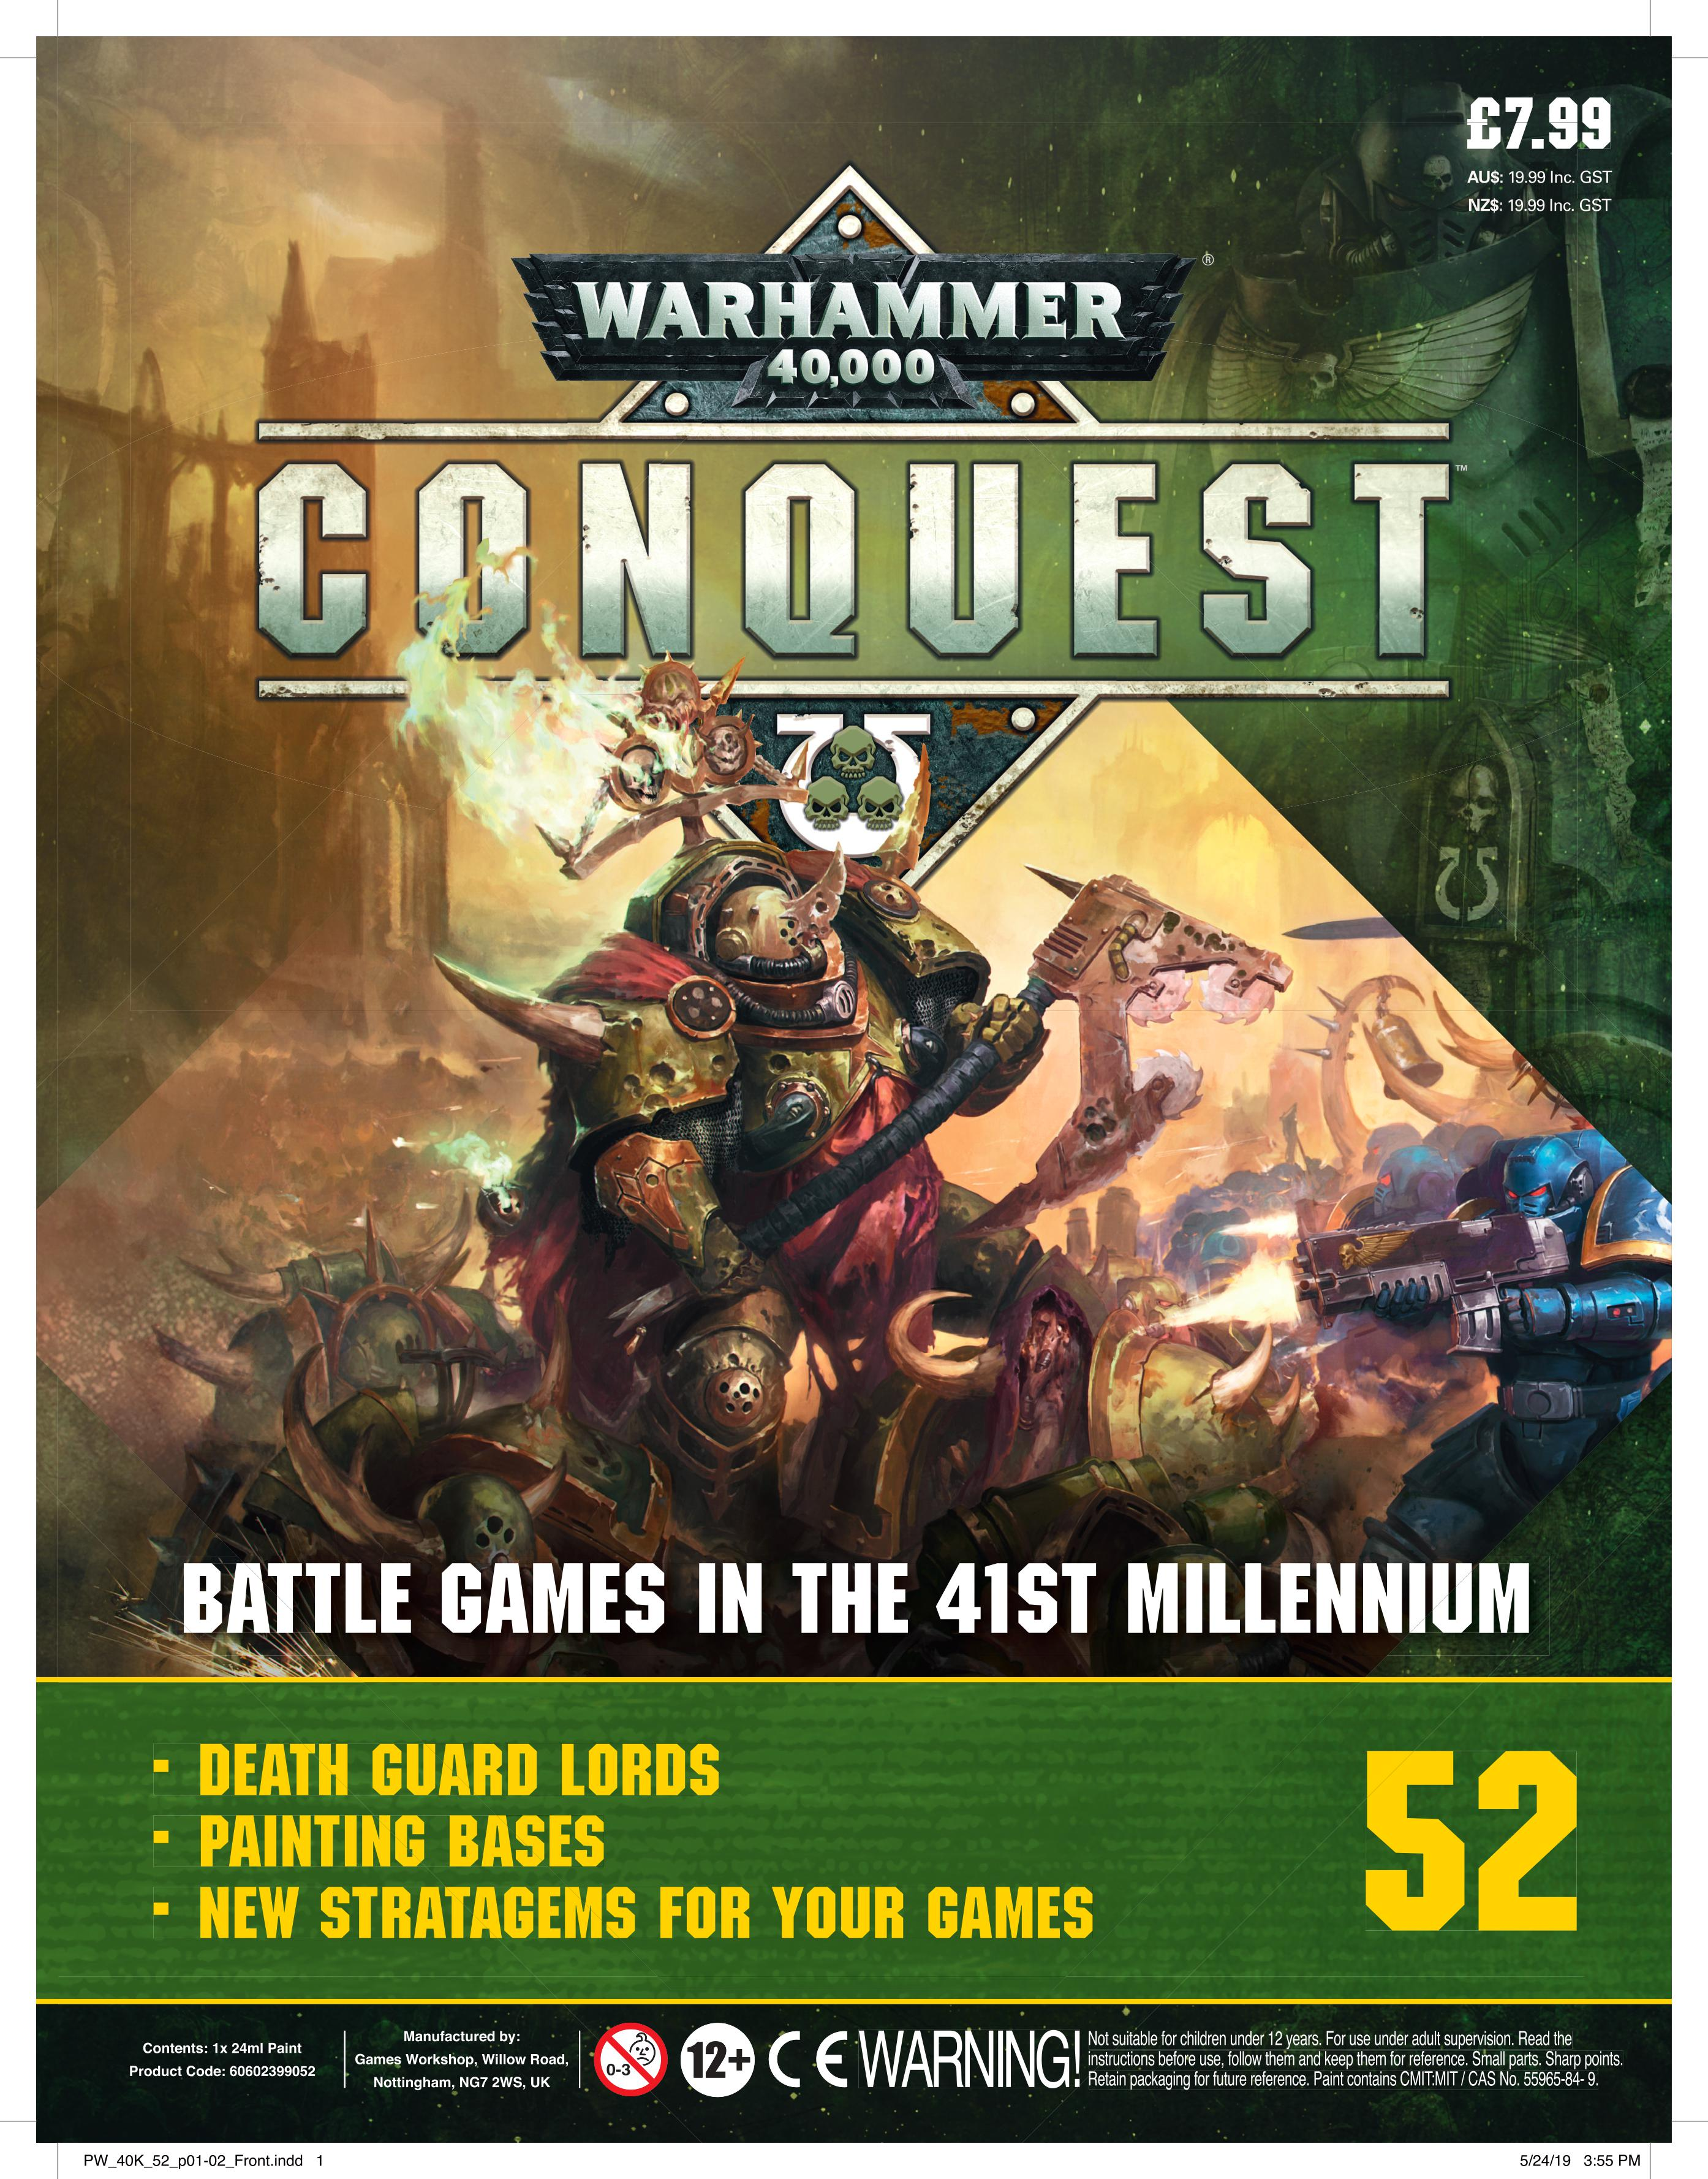 Warhammer Conquest #52 - Waterfront News